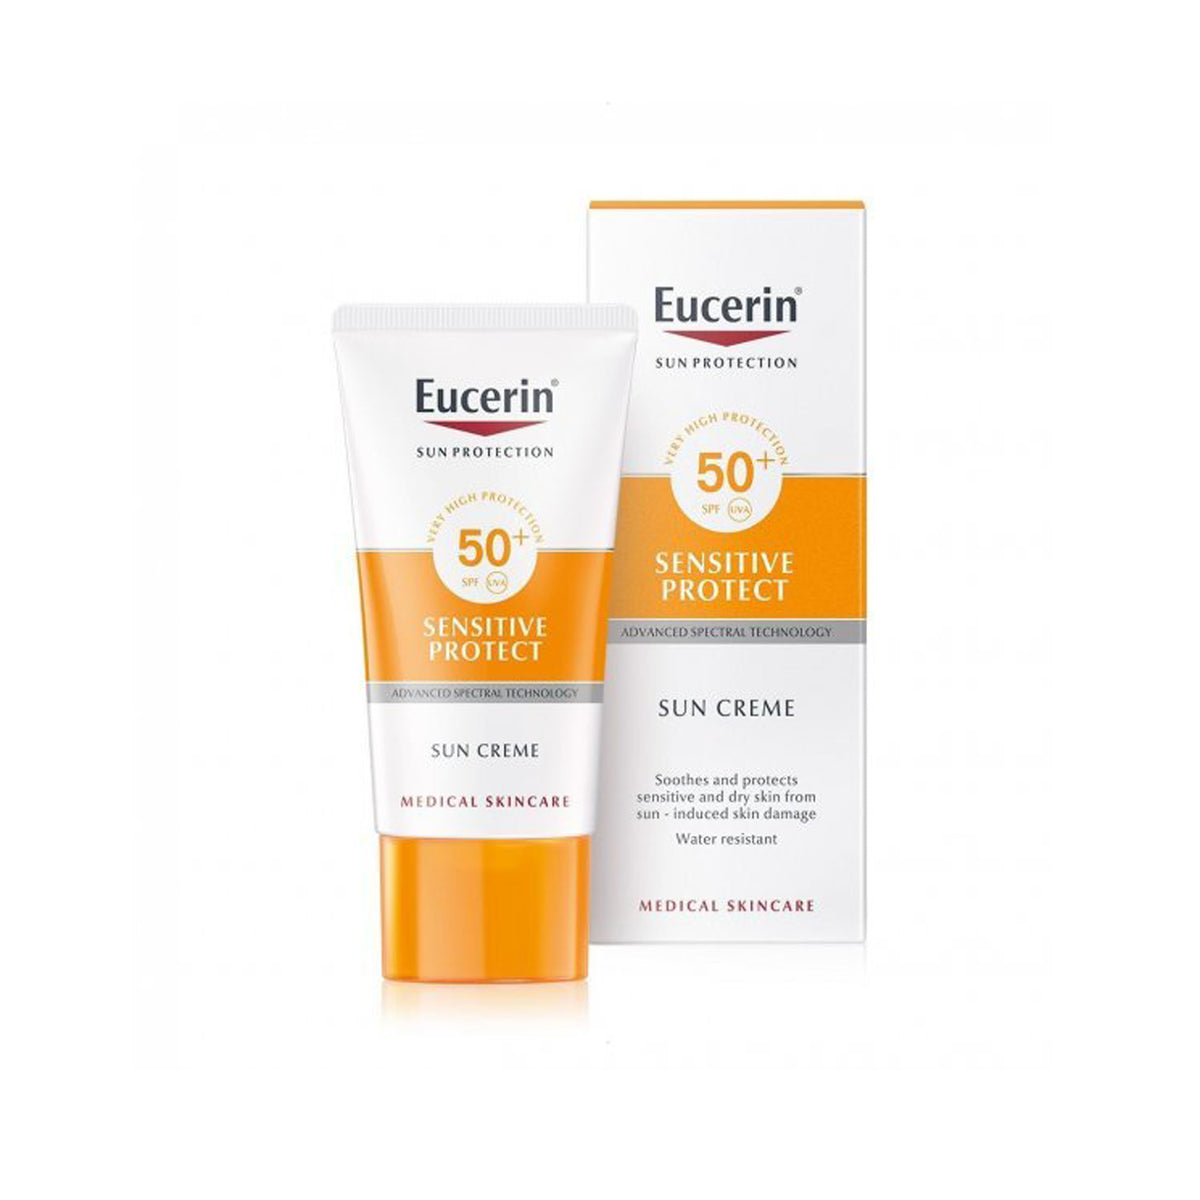 Eucerin Sensitive Protect Sun Cream FPS 50+